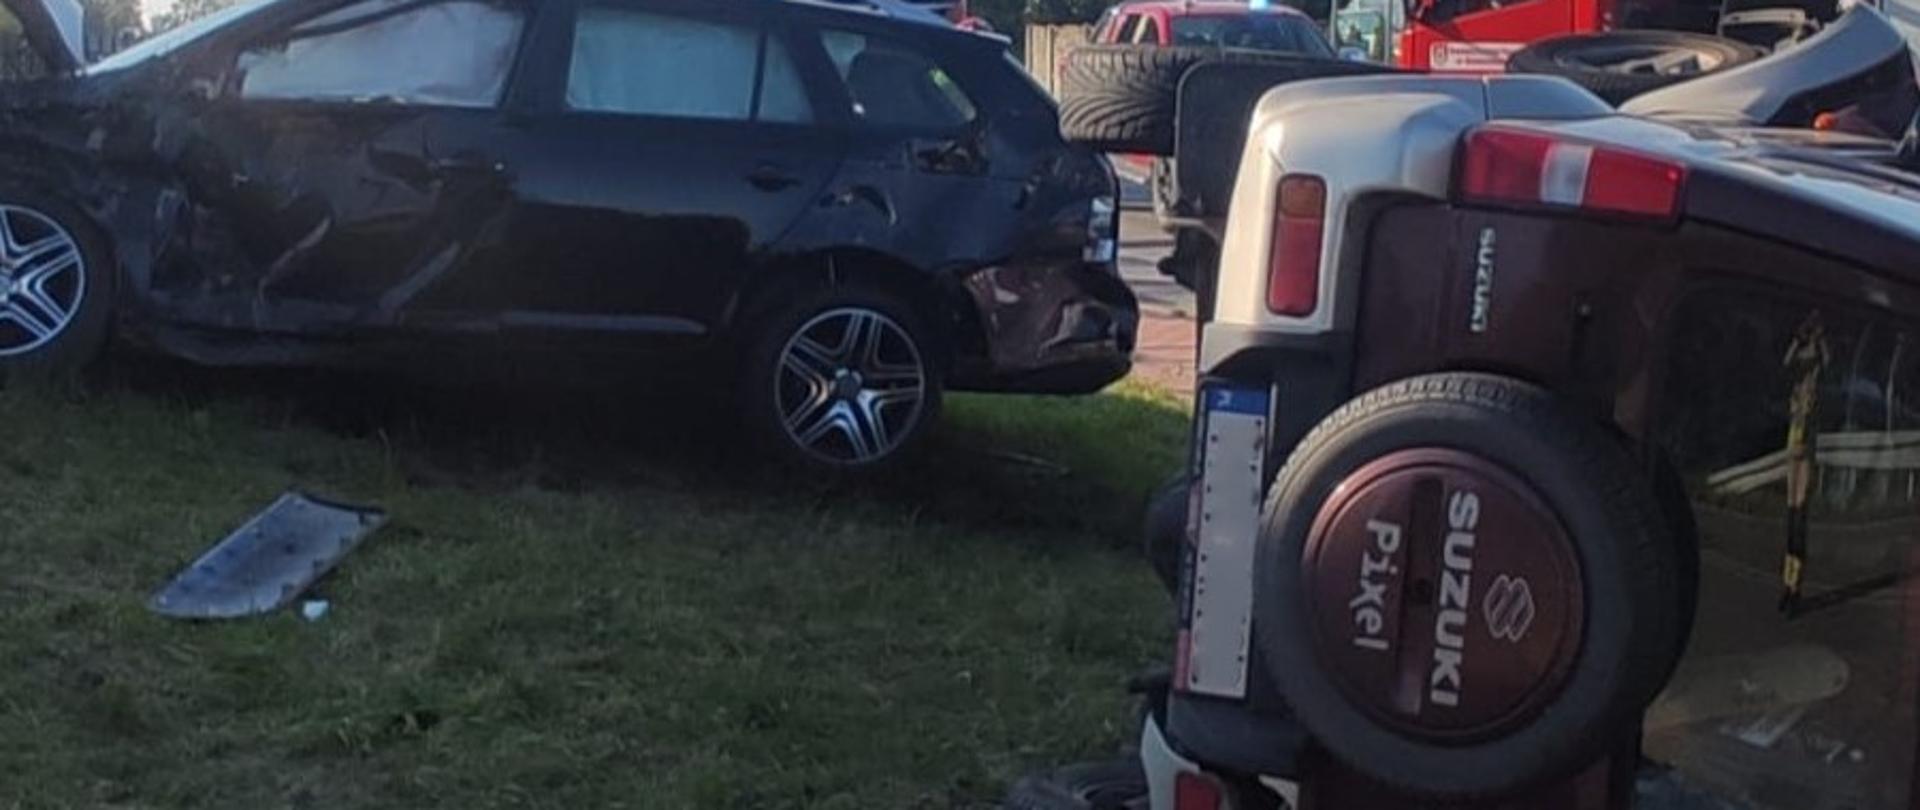 Zdjęcie przedstawia dwa uszkodzone samochody. Z lewej stoi na kołach Volkswagen, który uderzył w ogrodzenie, z prawej leży na boku Suzuki Jimmy. W głębi widać fragmenty samochodów pożarniczych.